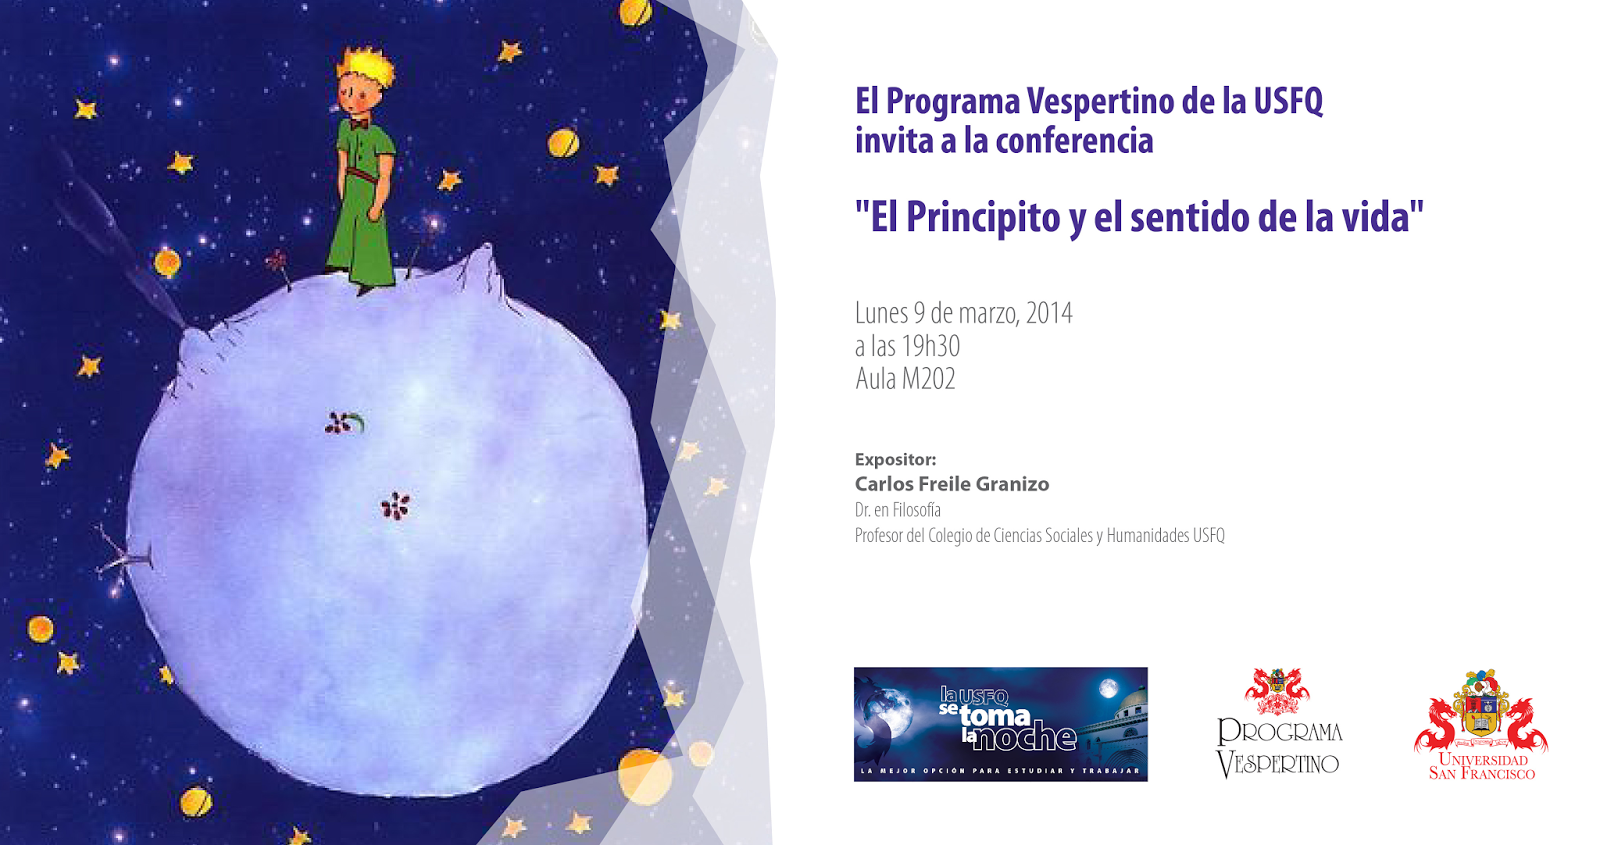 Conferencia "El Principito y el sentido de la vida" por Carlos Freile: Lunes 9 de Marzo, 19h30, aula M202